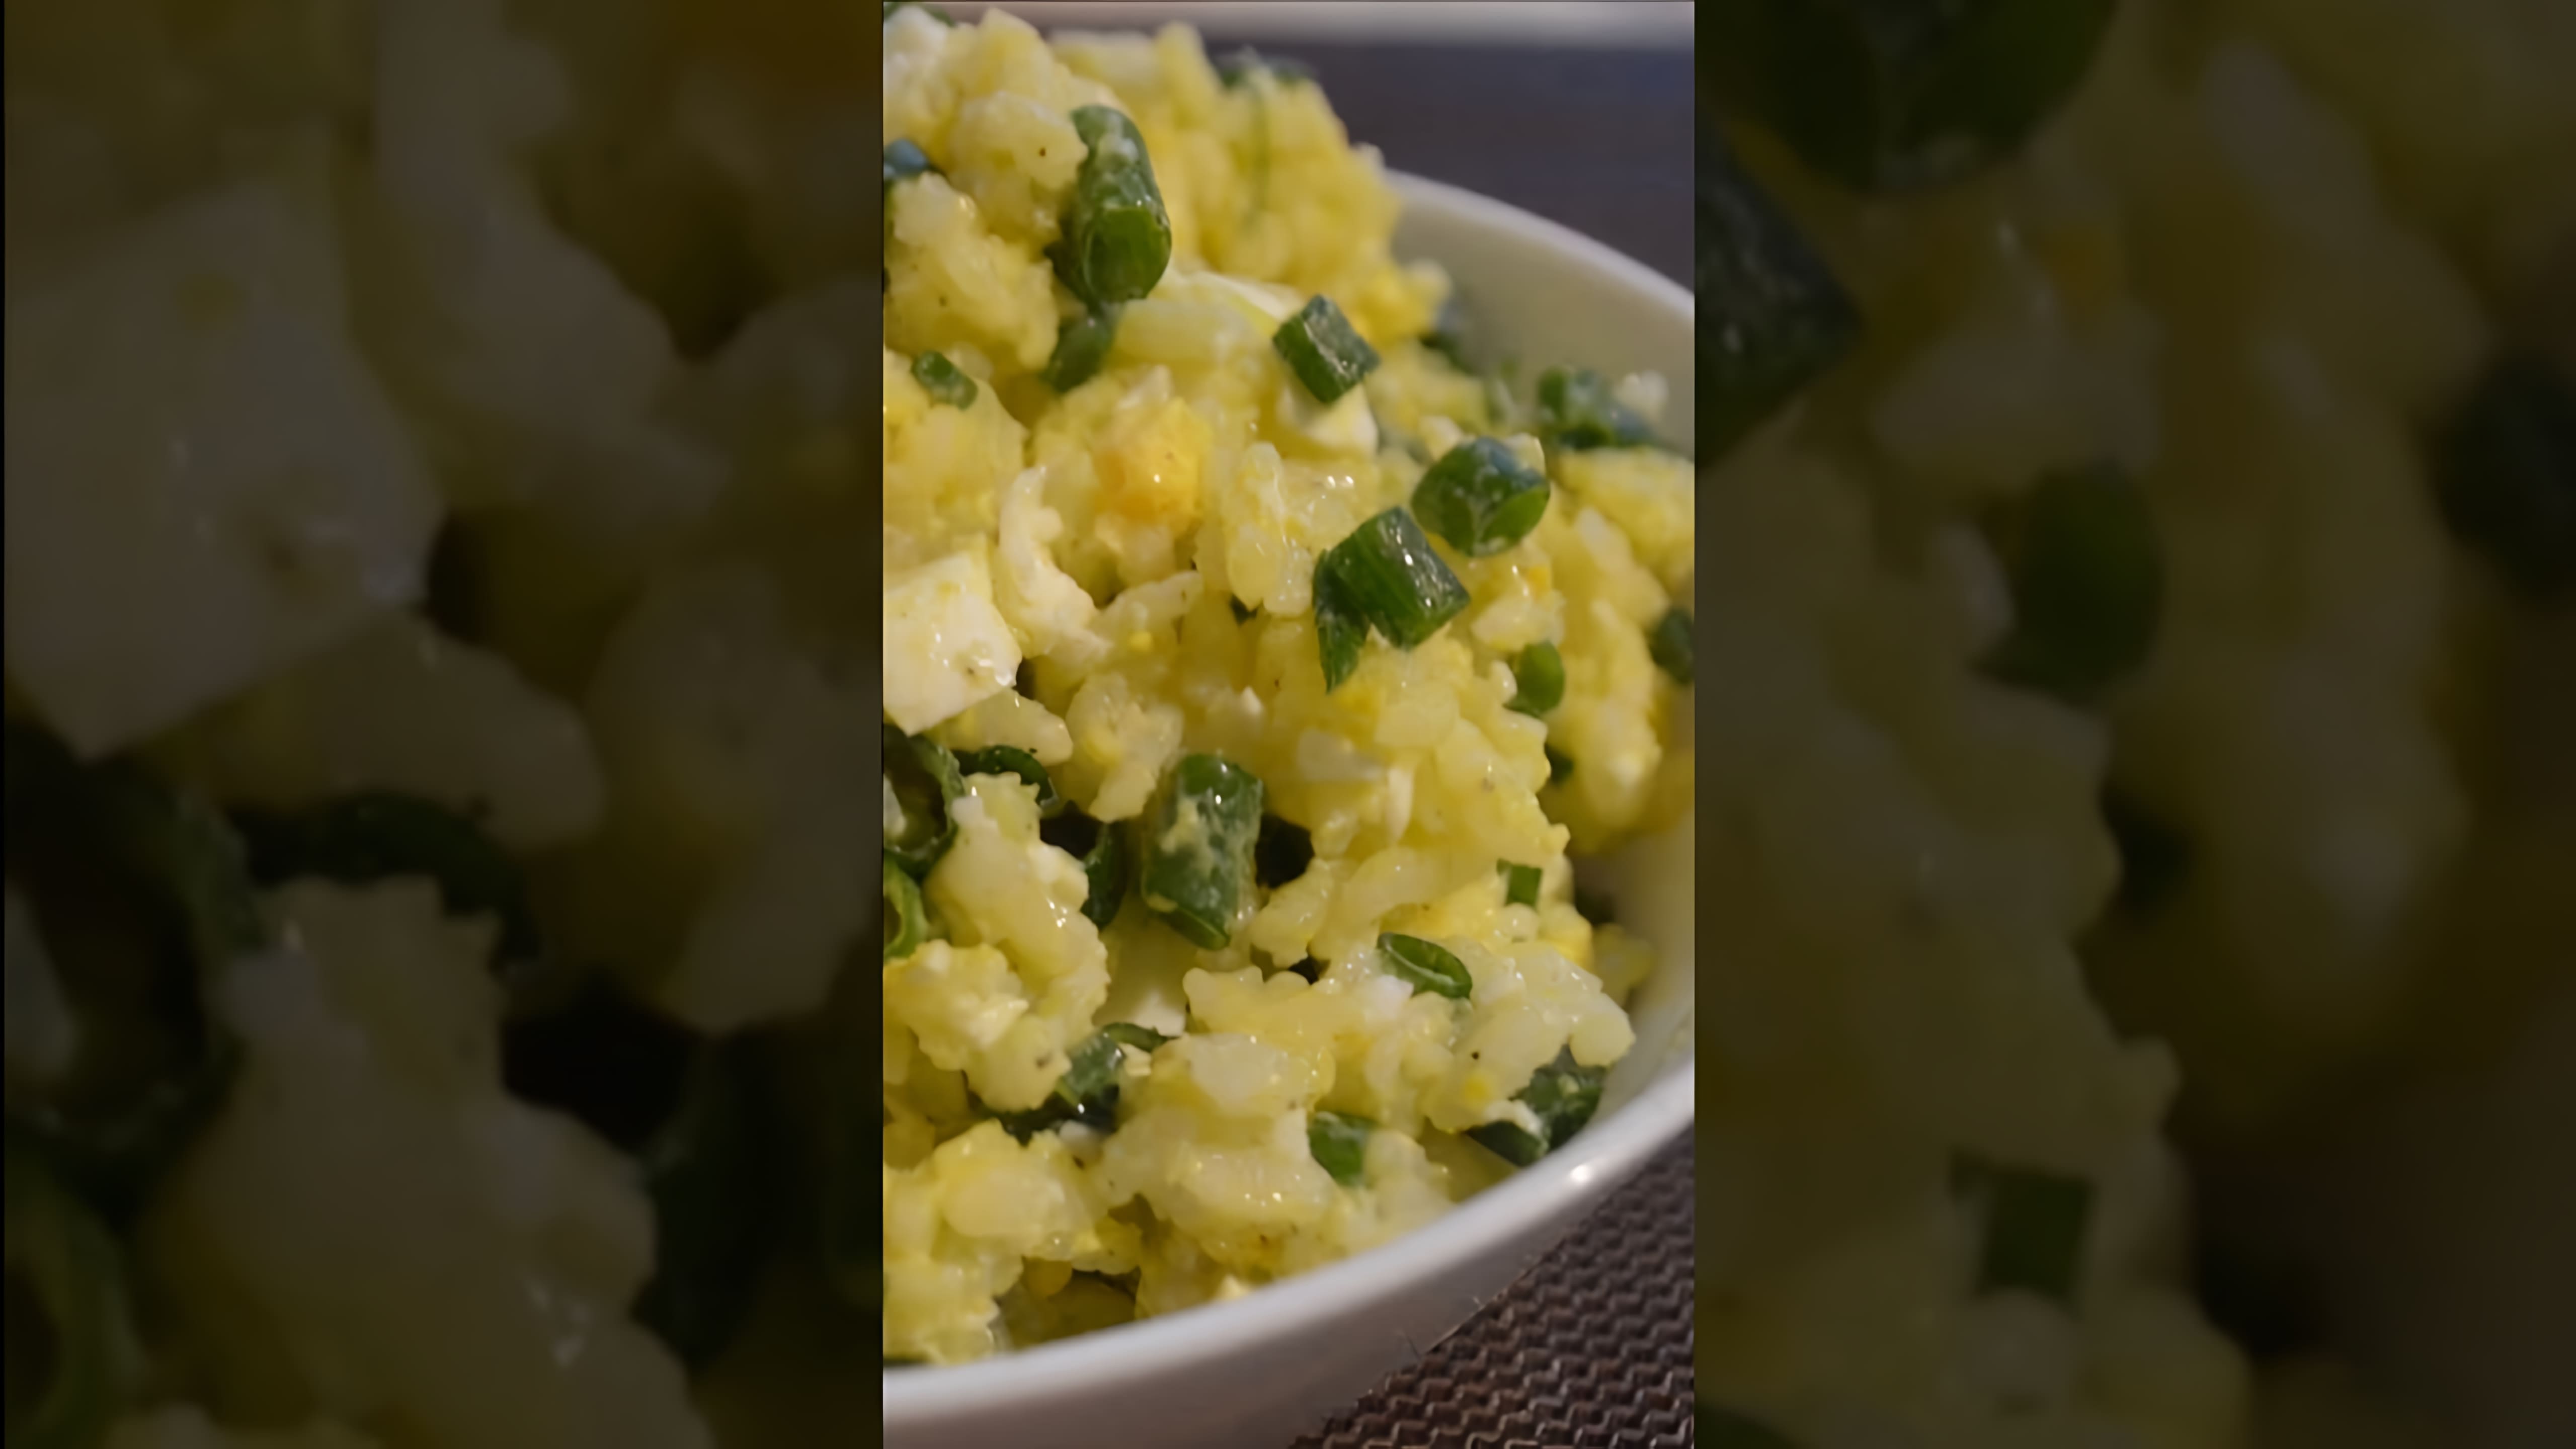 В этом видео демонстрируется рецепт вкусной начинки из риса, яйца и зеленого лука